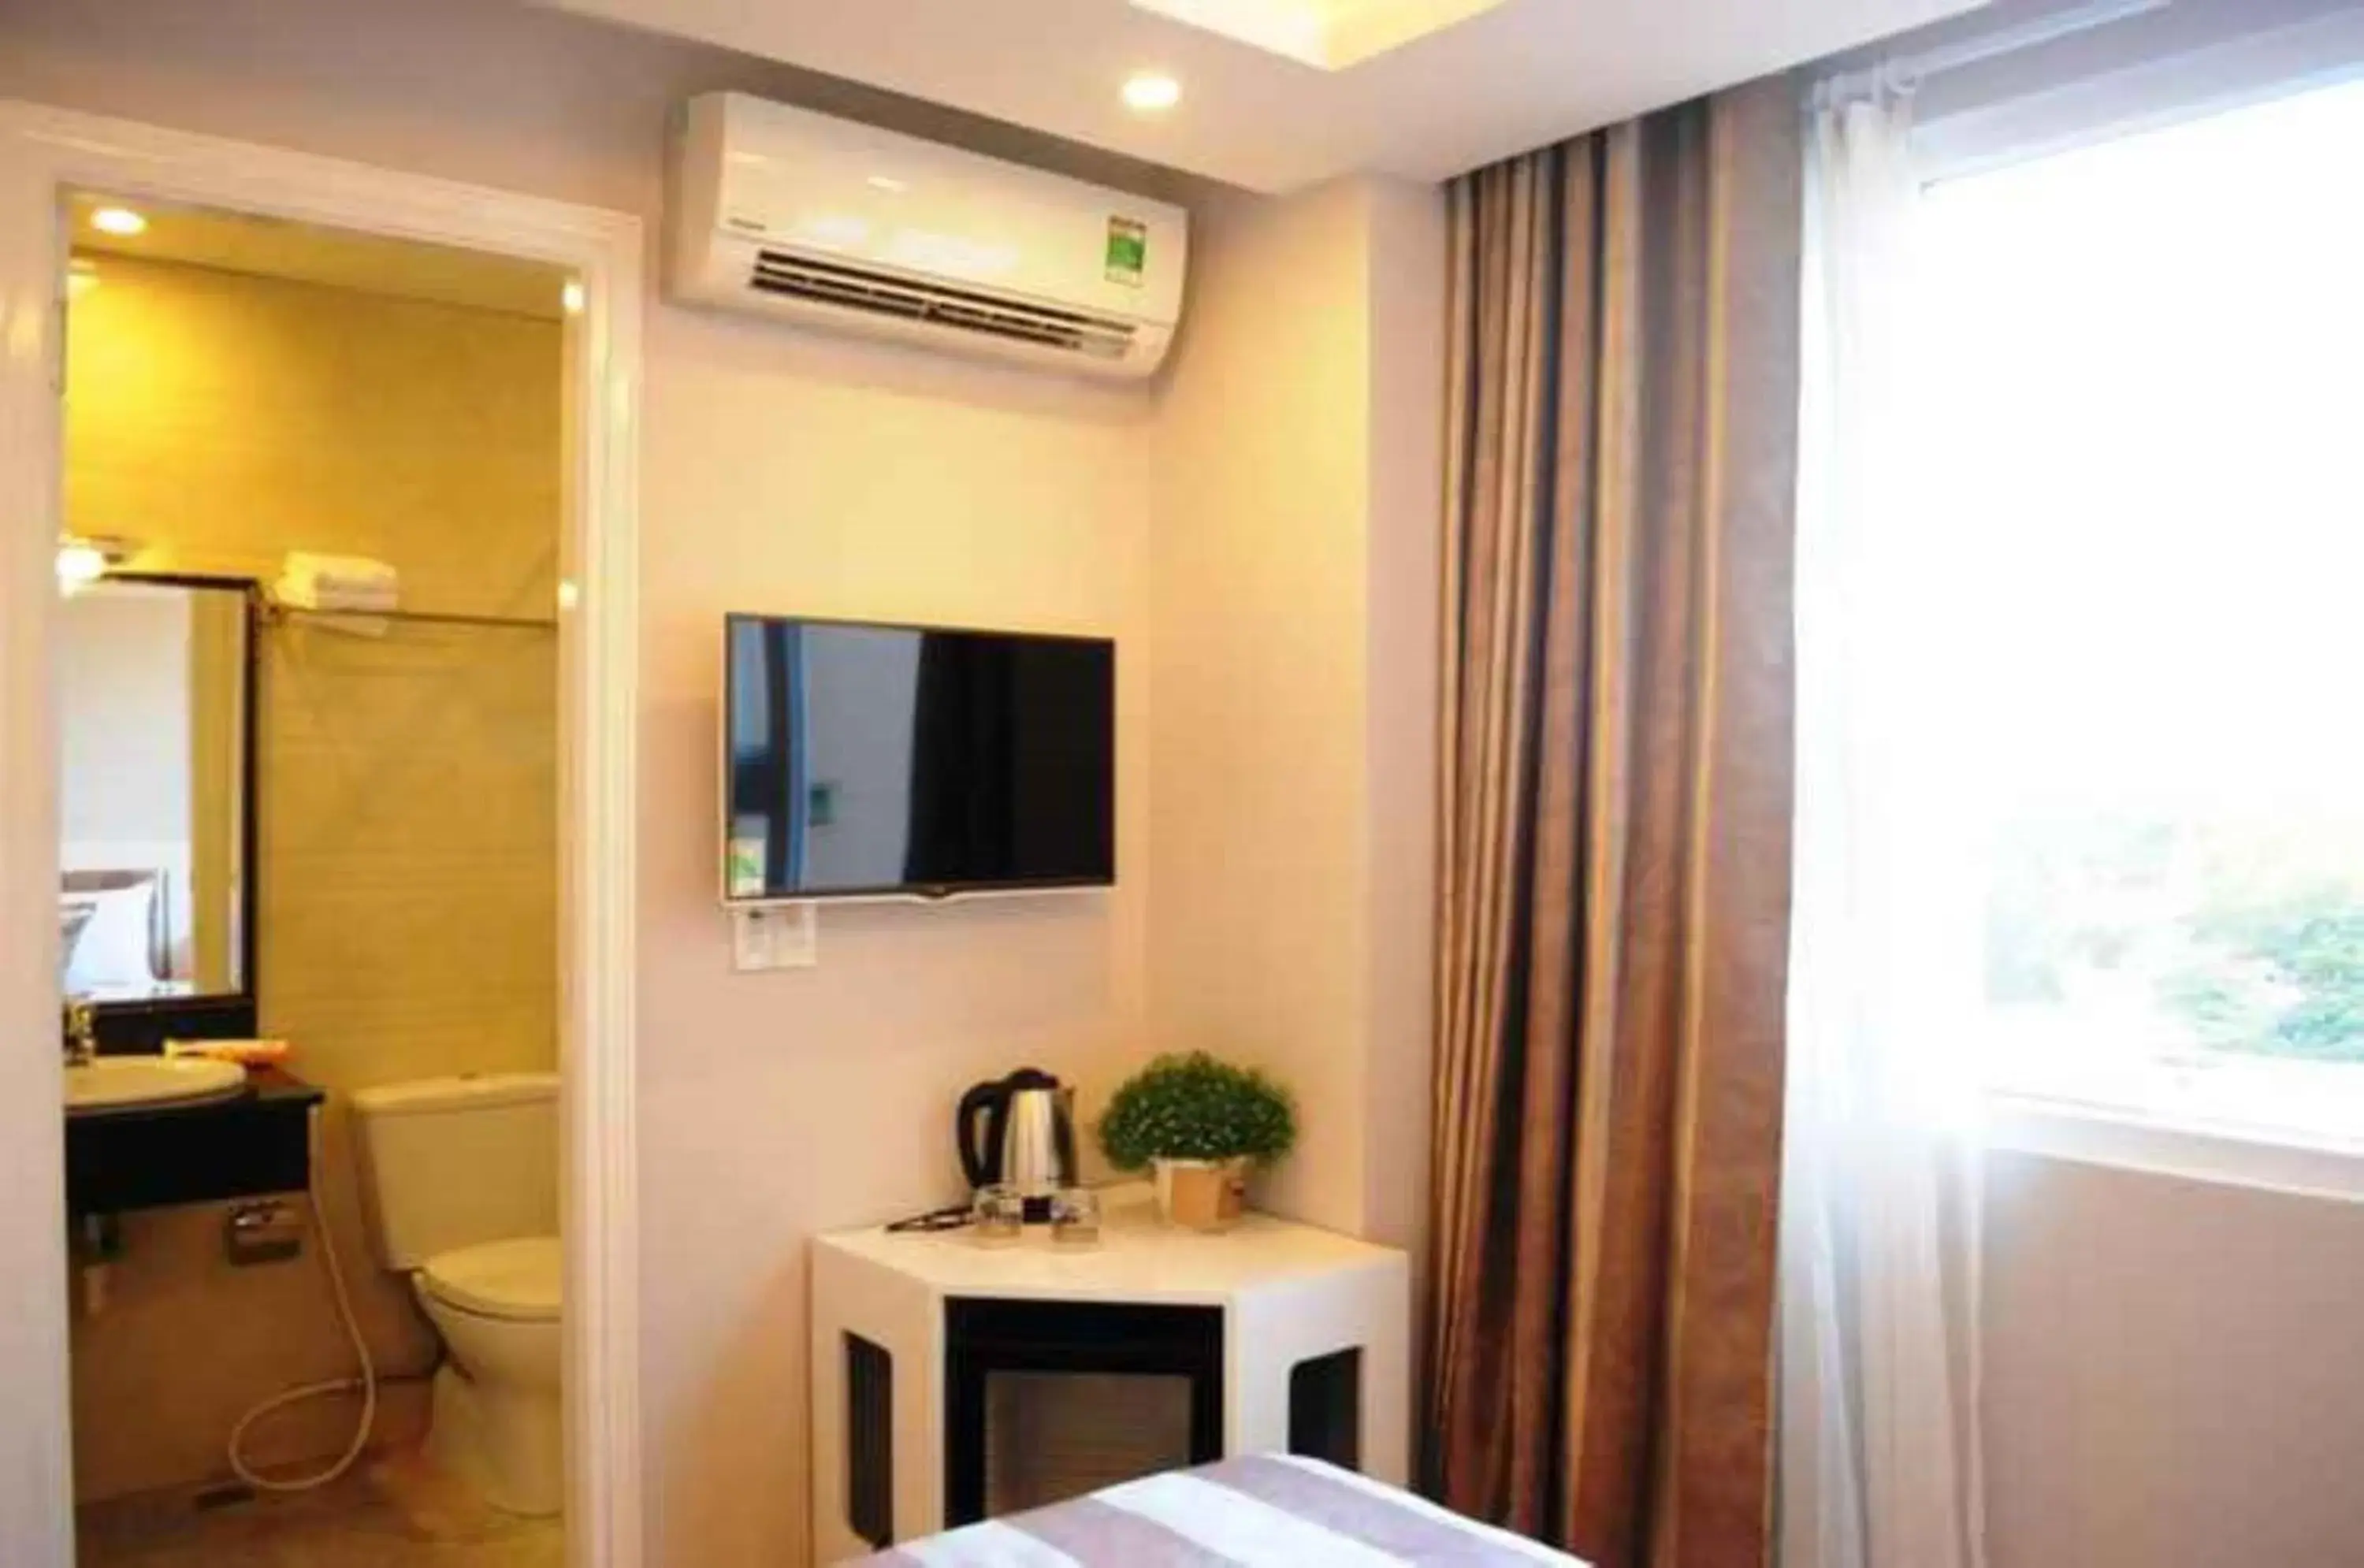 Bedroom, TV/Entertainment Center in Van Nam Hotel